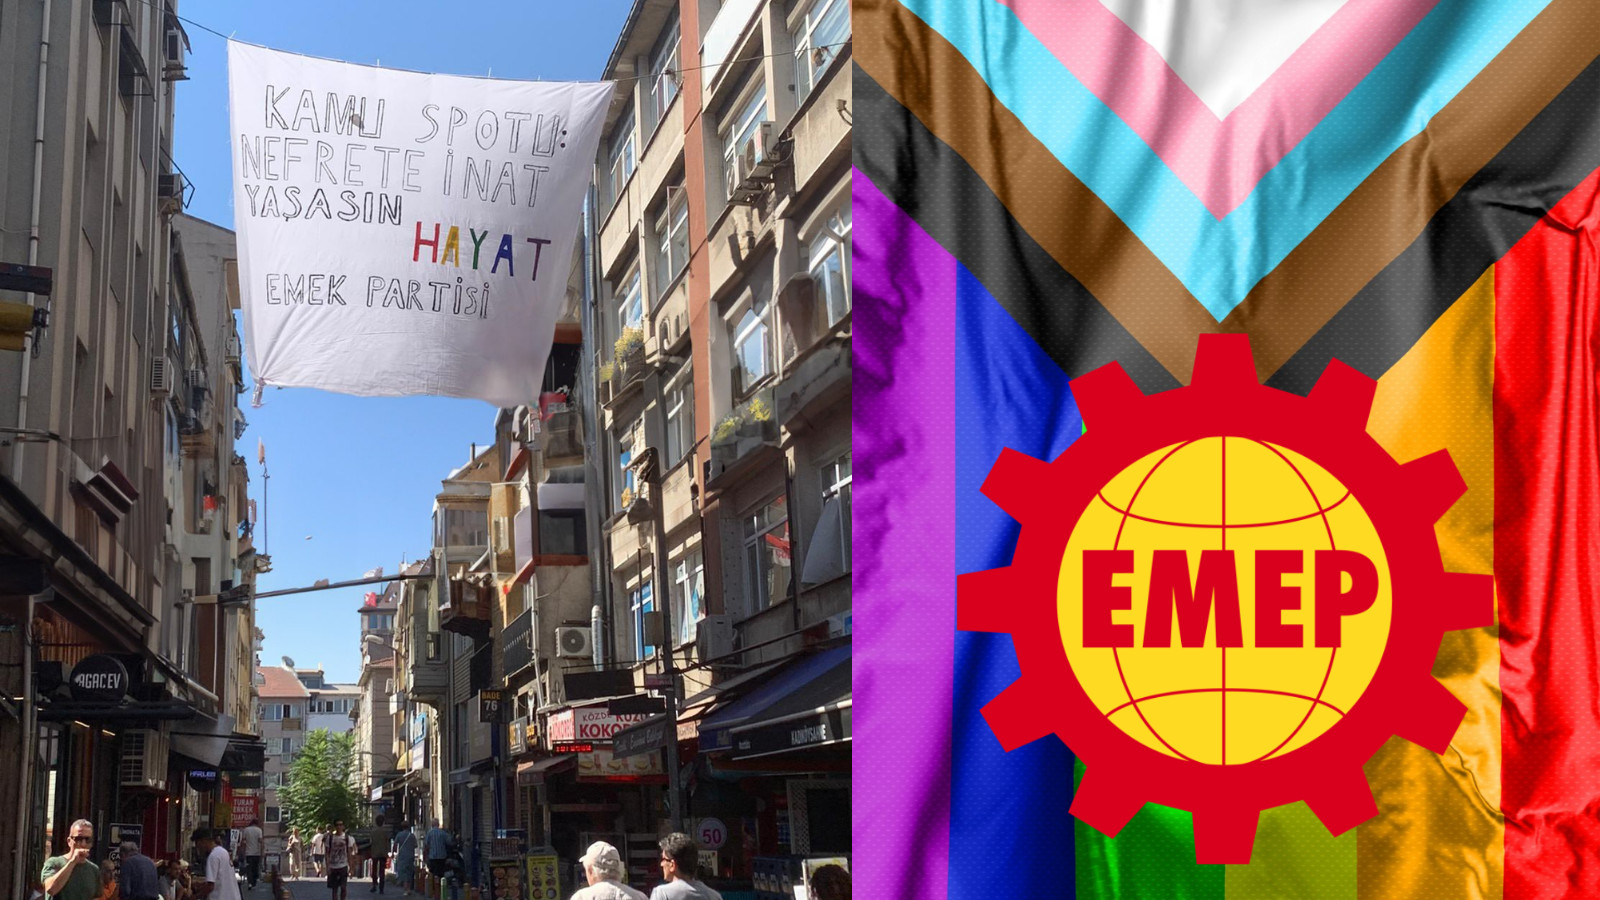 EMEP Kadıköy’den nefret karşıtı kamu spotu | Kaos GL - LGBTİ+ Haber Portalı Haber